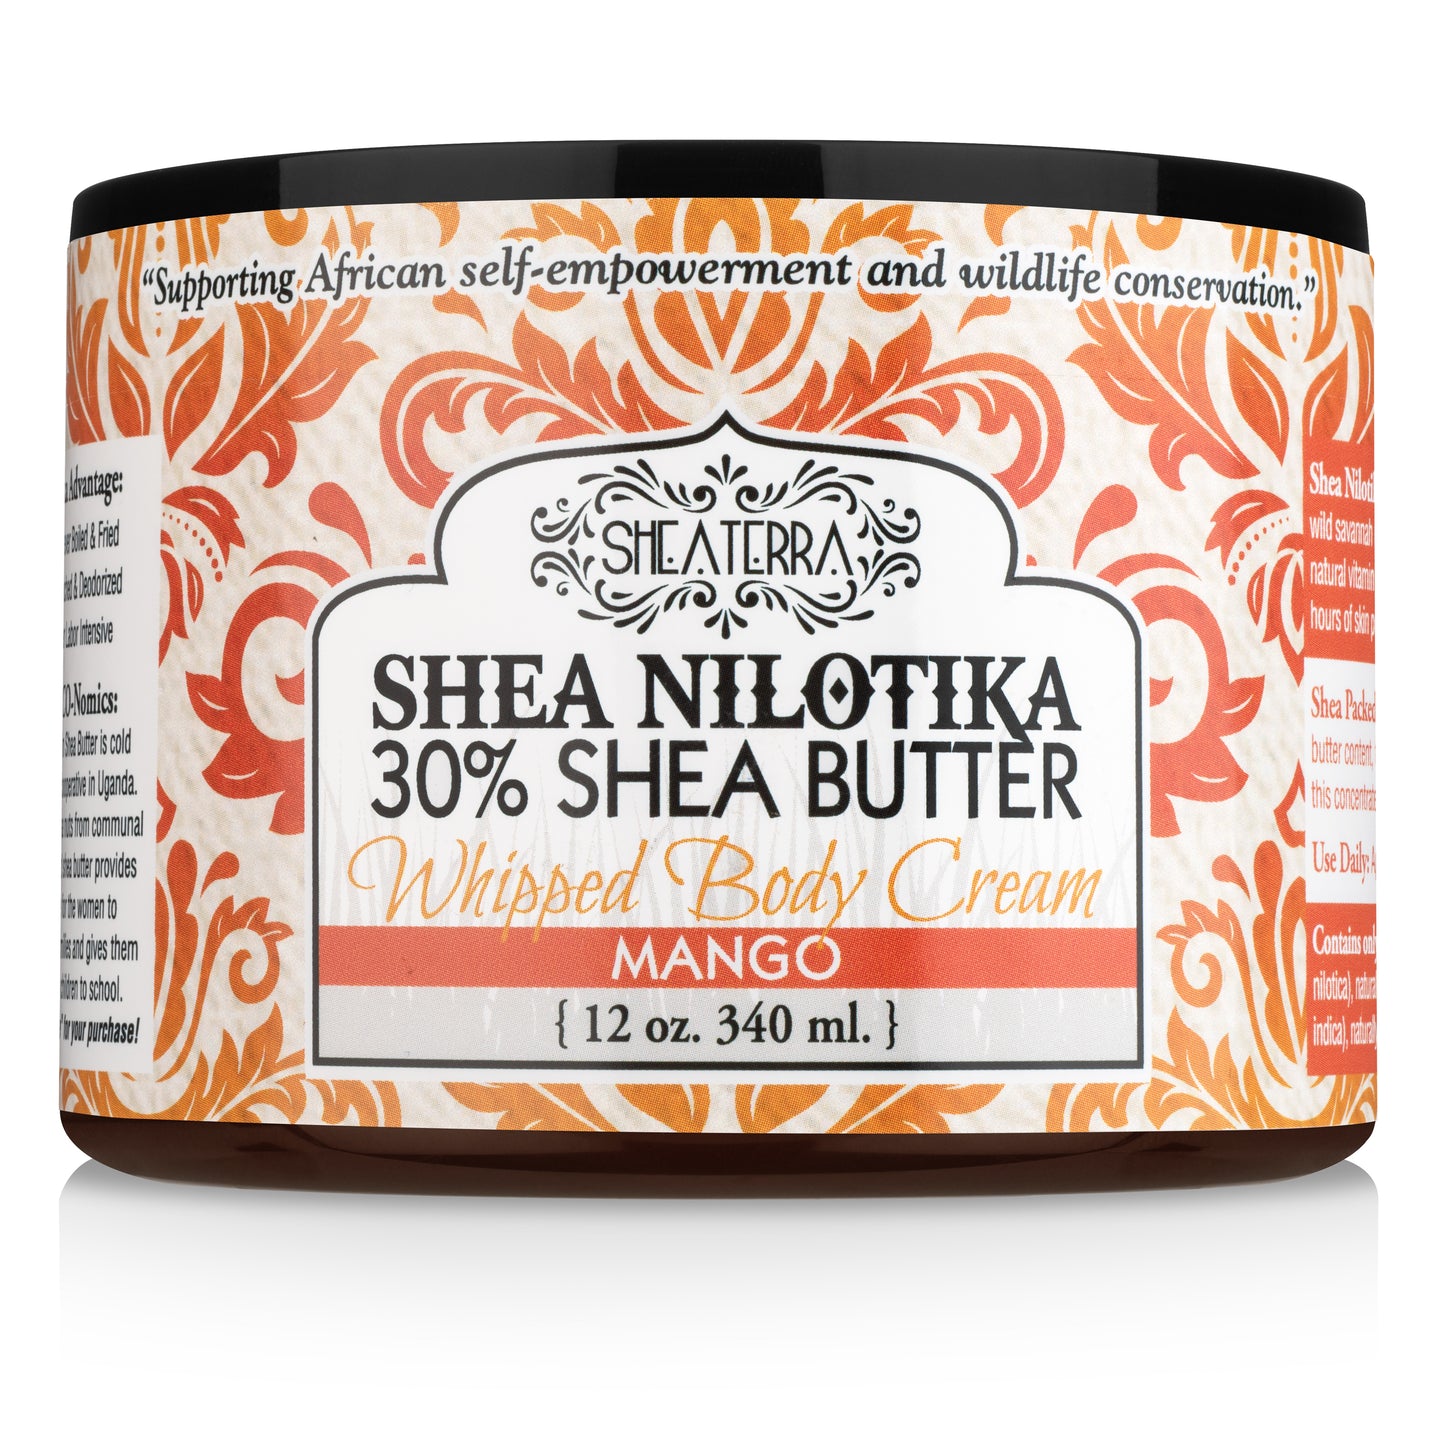 Shea Nilotik' 30% Shea Butter Whipped Body Cream MANGO